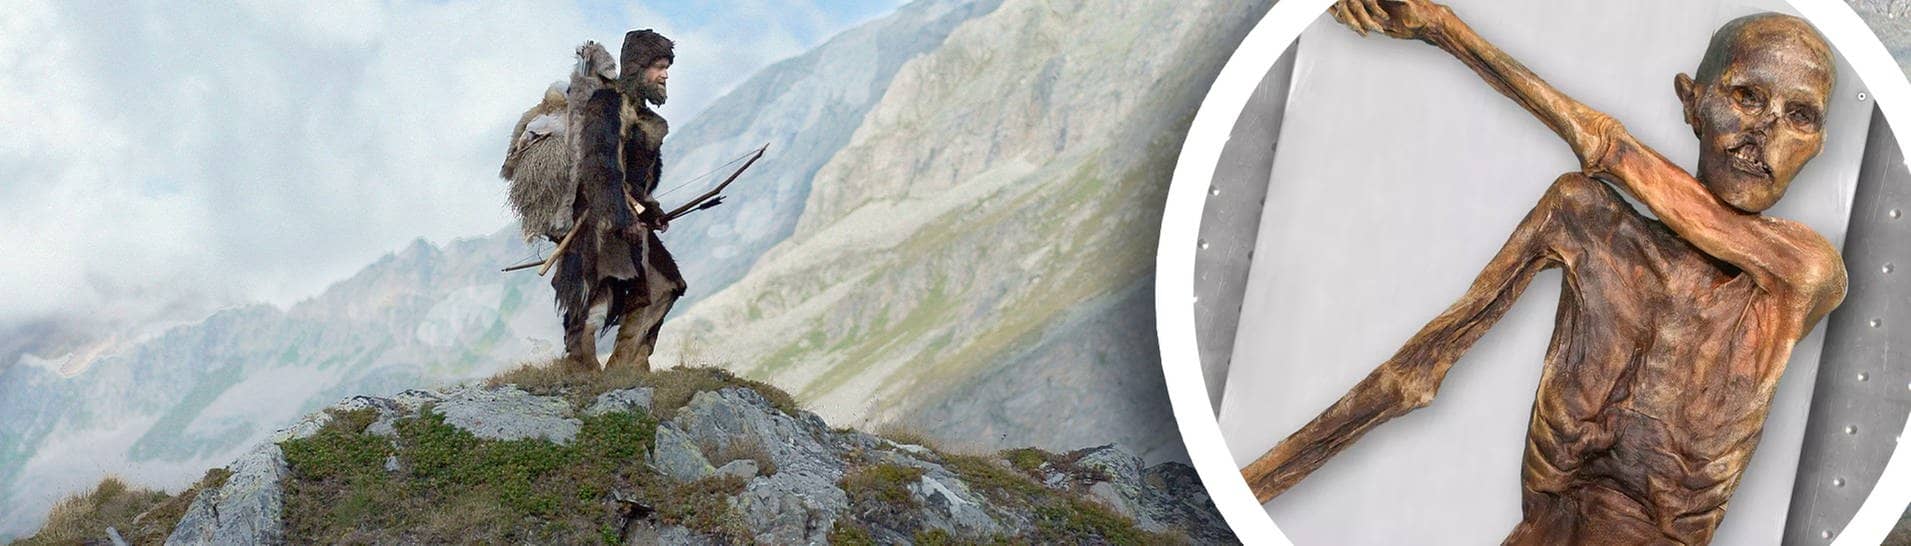 Ötzi in den Alpen: Wir wissen wenig von dem Jungsteinzeitler – und doch sehr viel.